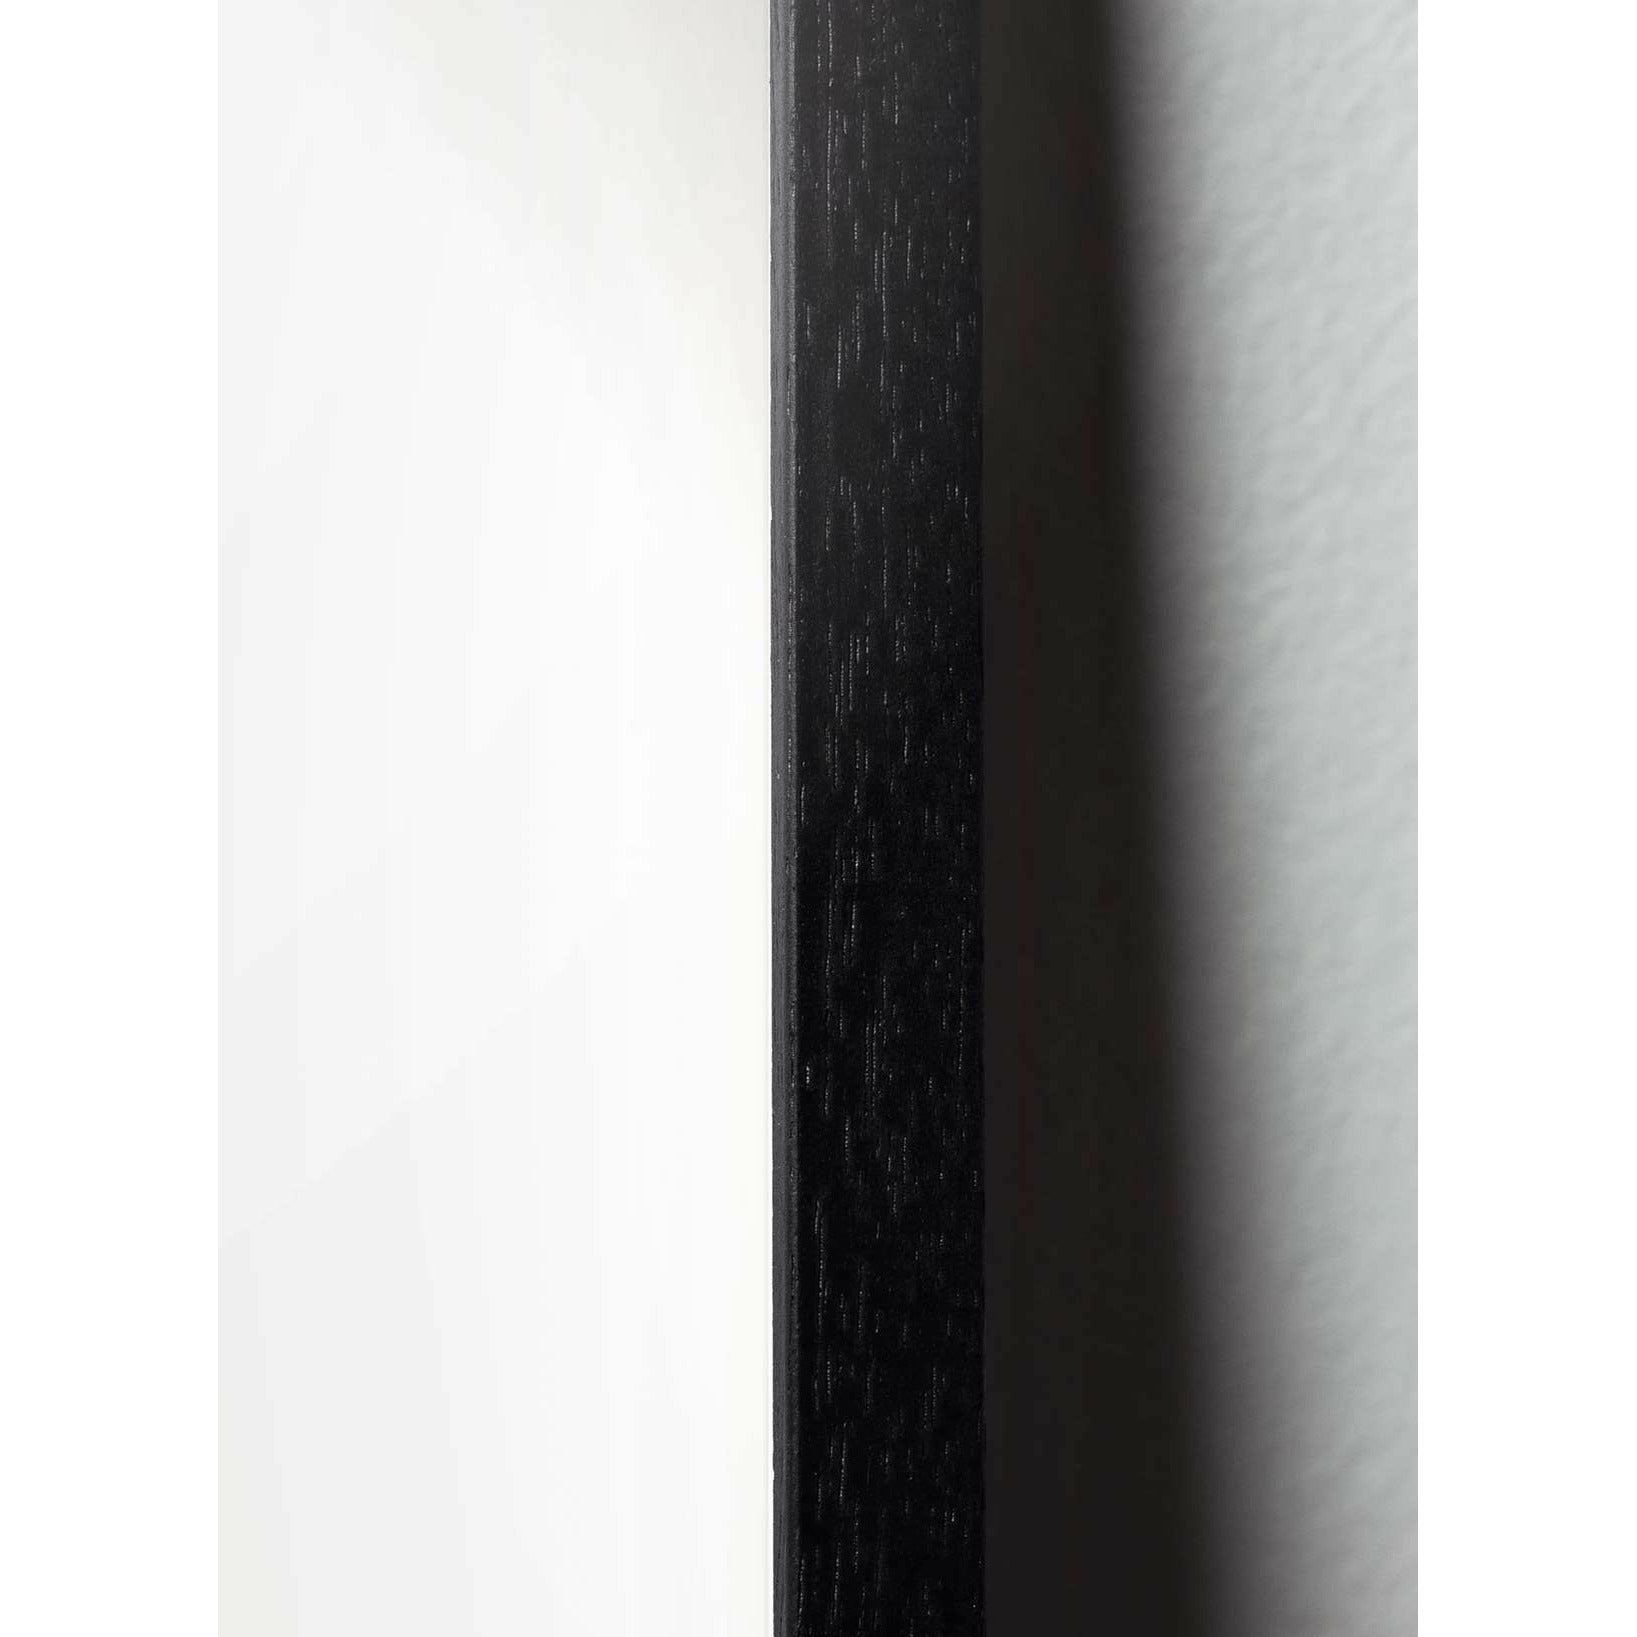 Brainchild kapky klasický plakát, rám v černém lakovaném dřevo A5, pískově barevné pozadí